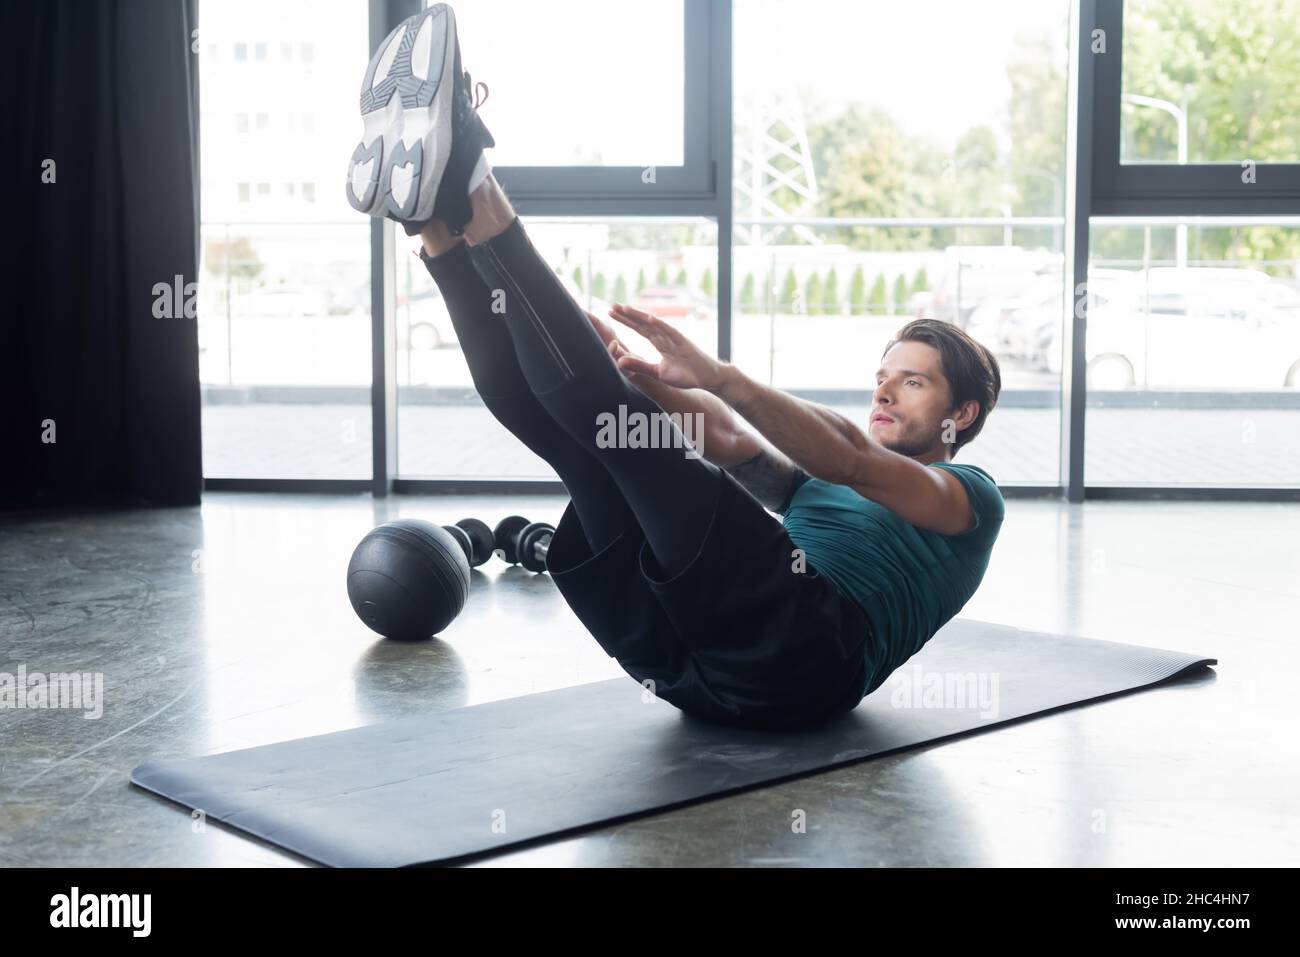 Un sportif s'entraîne sur un tapis de fitness près du slam ball dans la salle de gym Banque D'Images